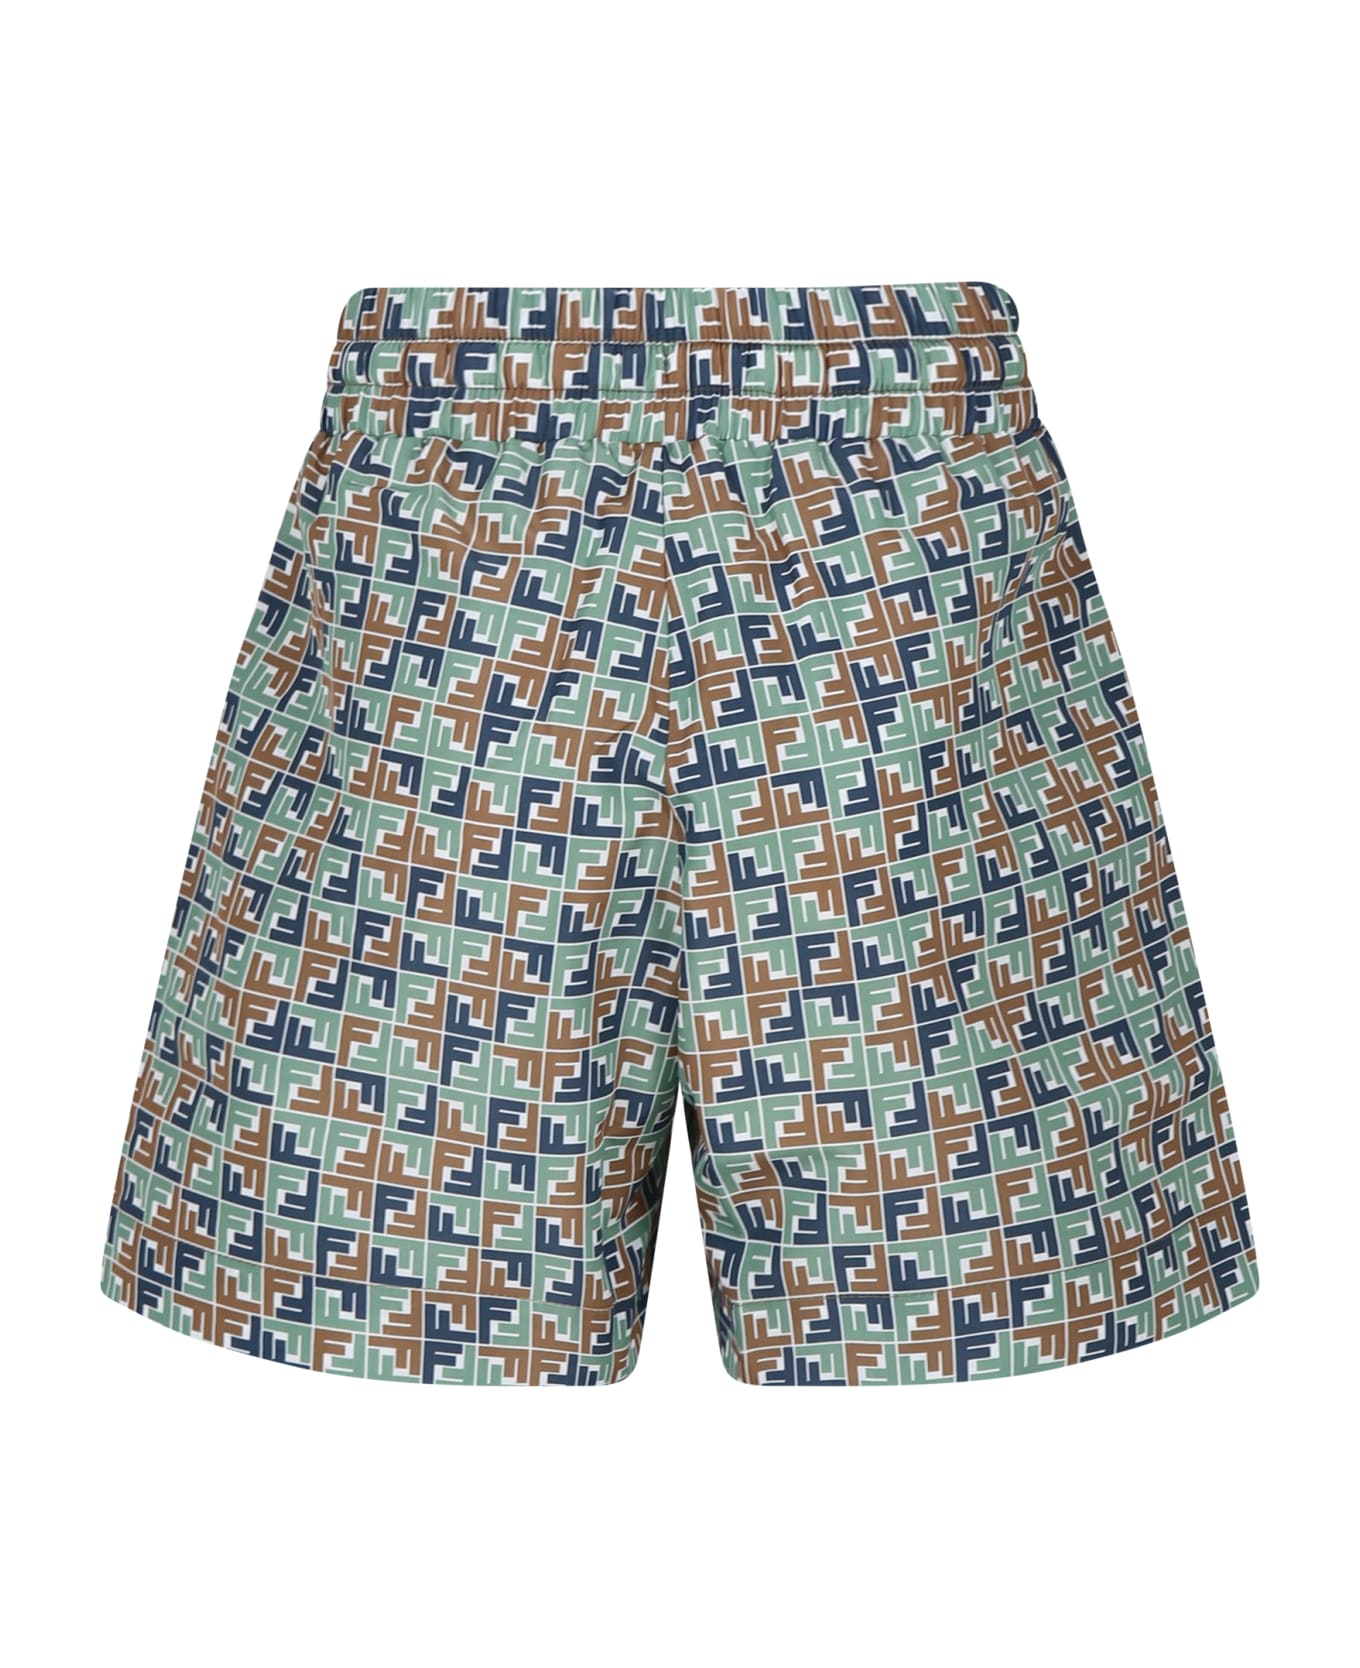 Fendi Multicolor Swim Shorts For Boy With Iconic Ff - Multicolor